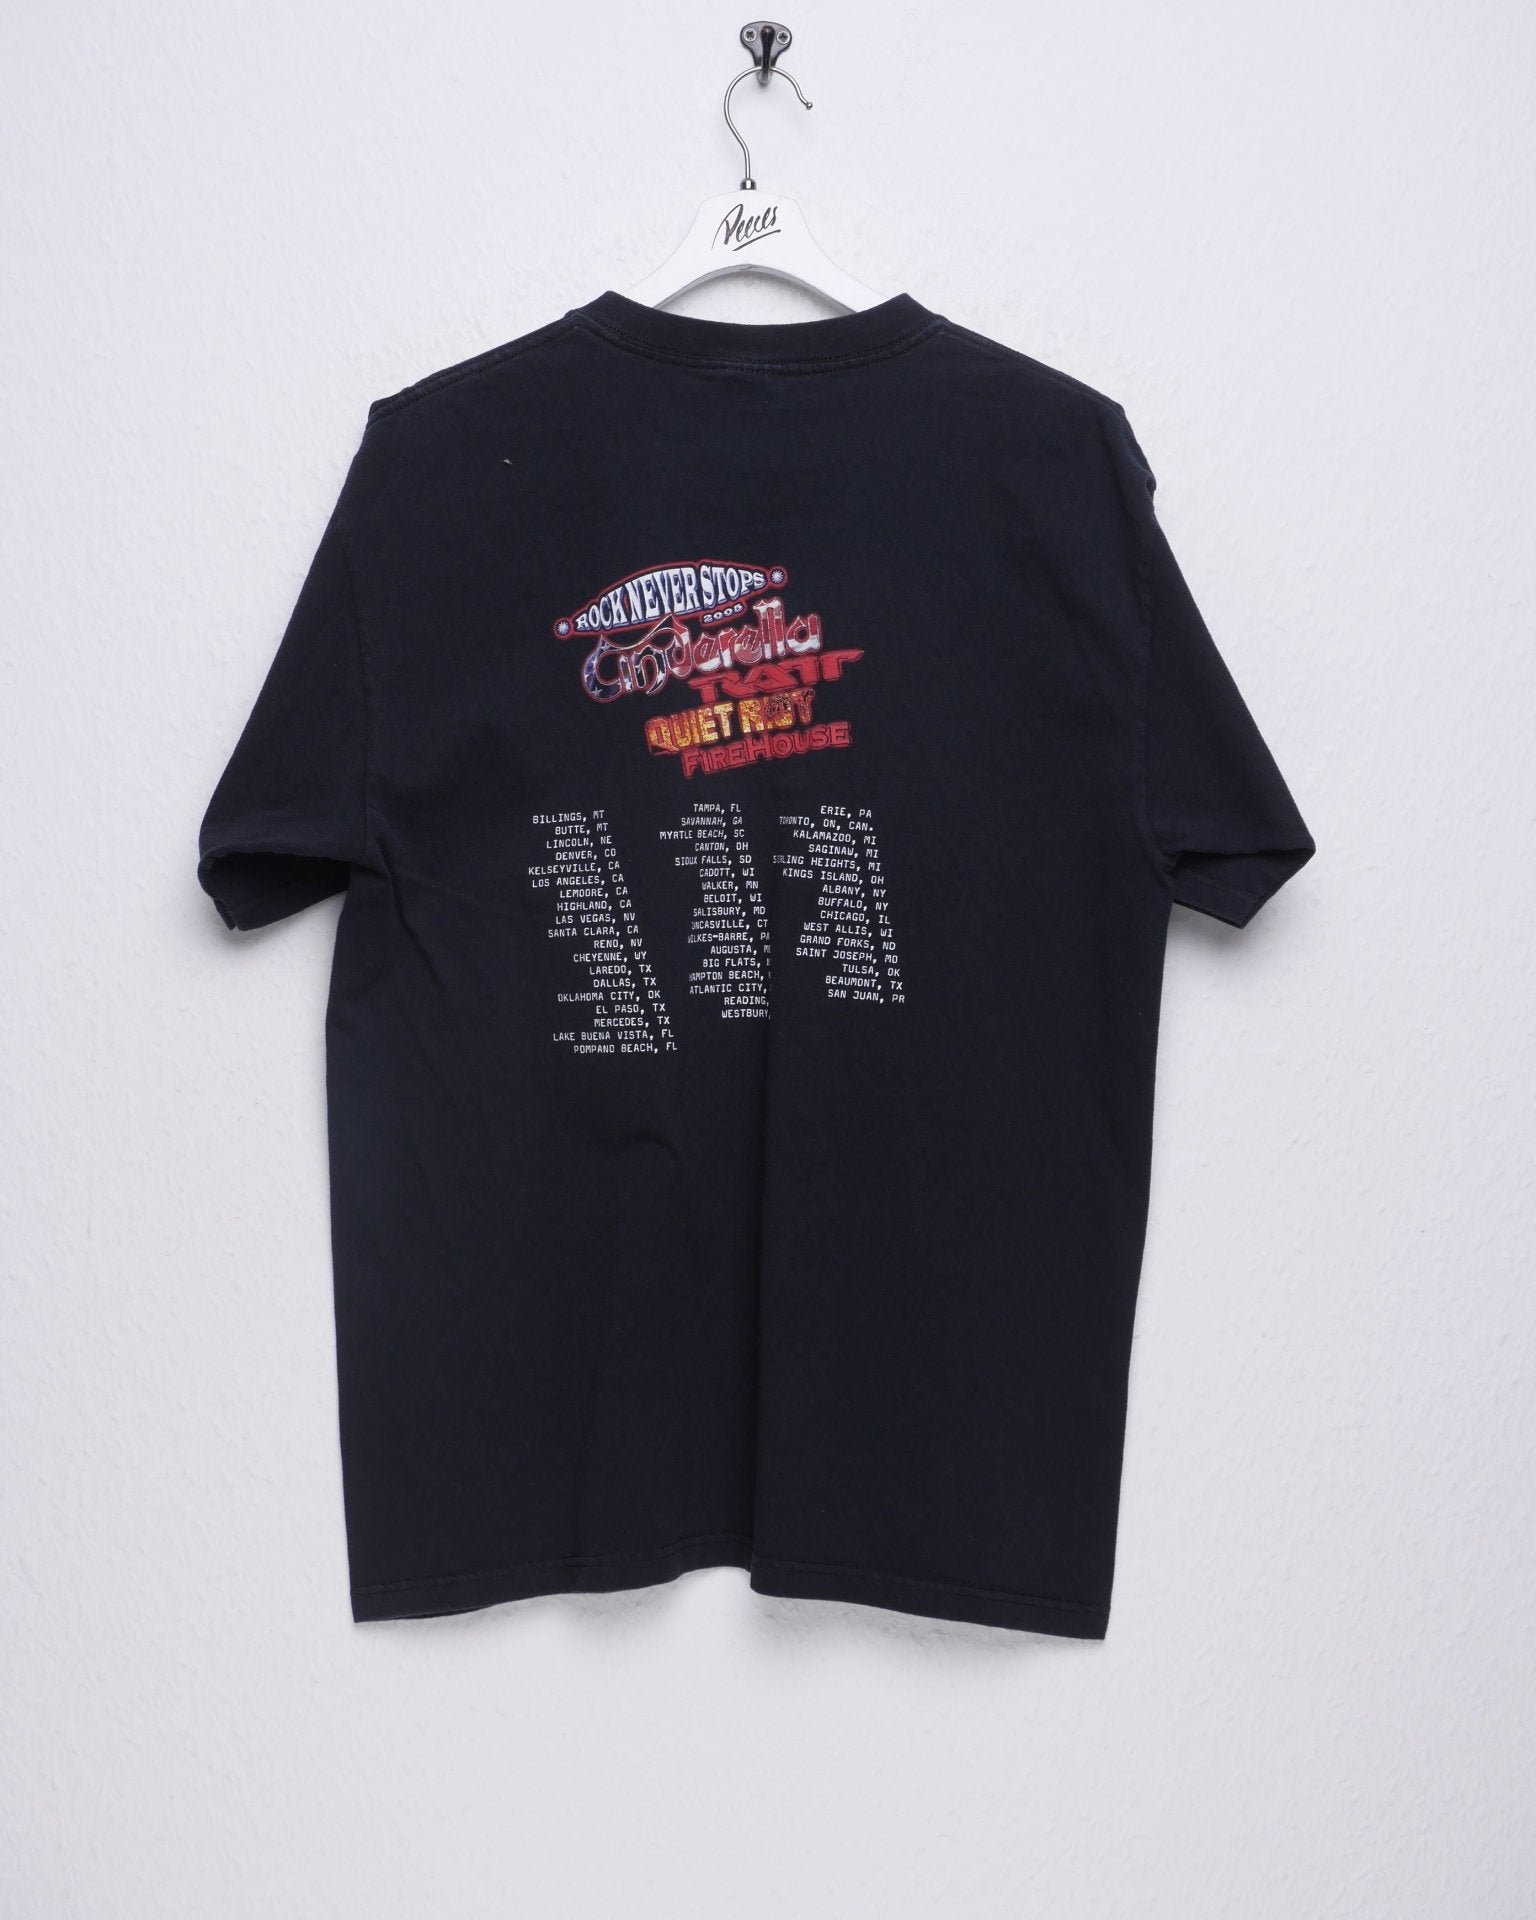 Rock never stops Tour 2005 printed Logo Shirt - Peeces